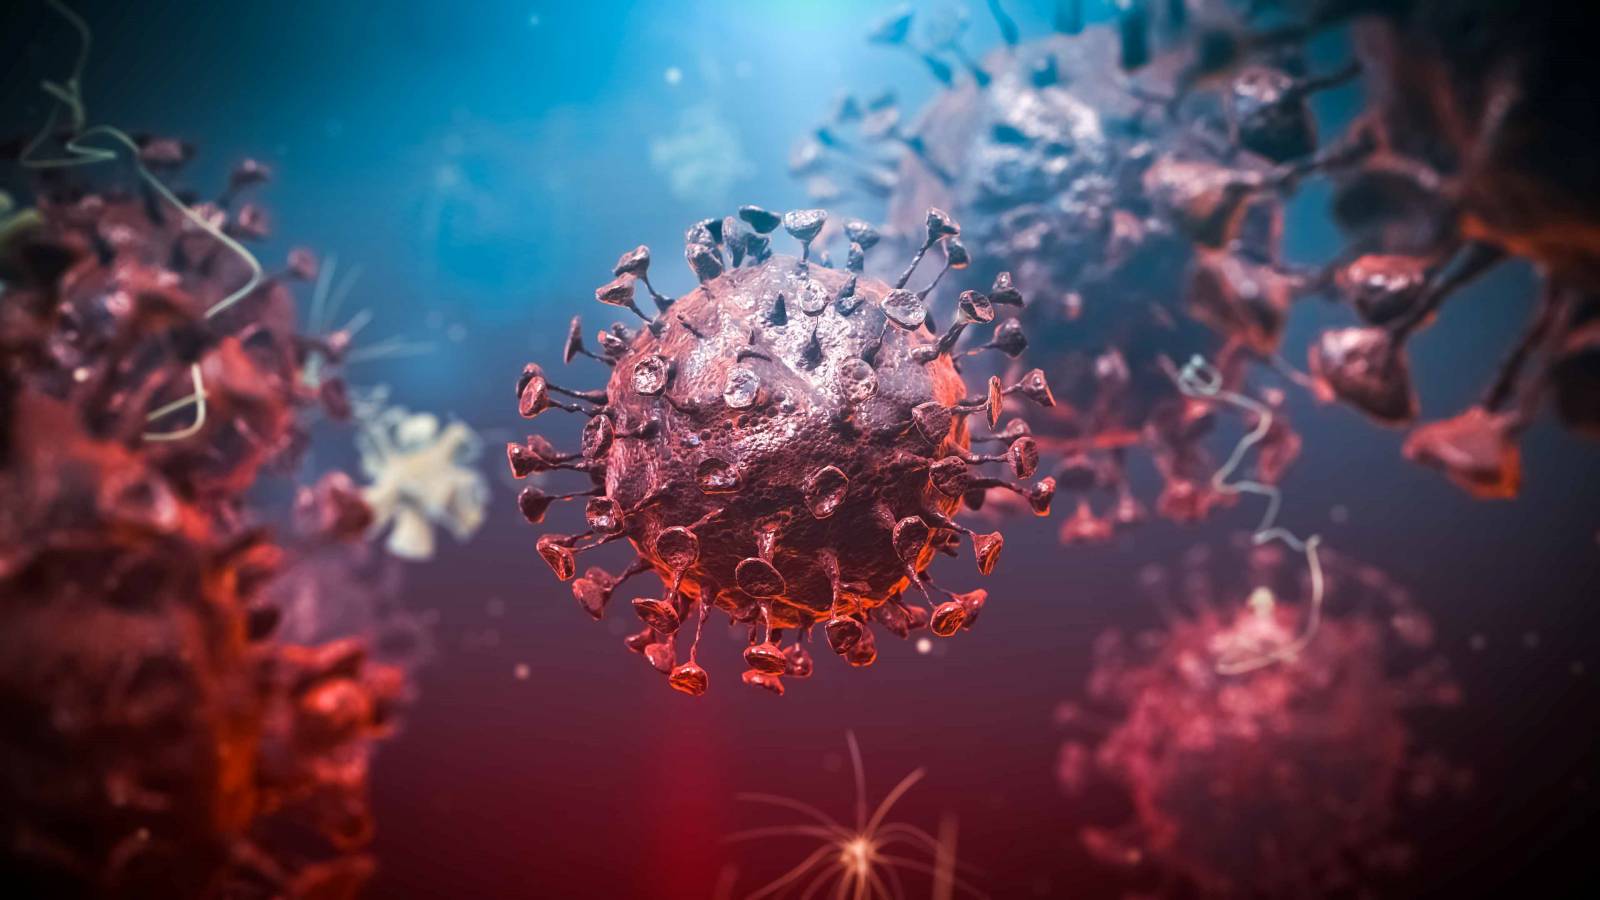 Coronavirus Rumænien tilfælde kureret 11. maj